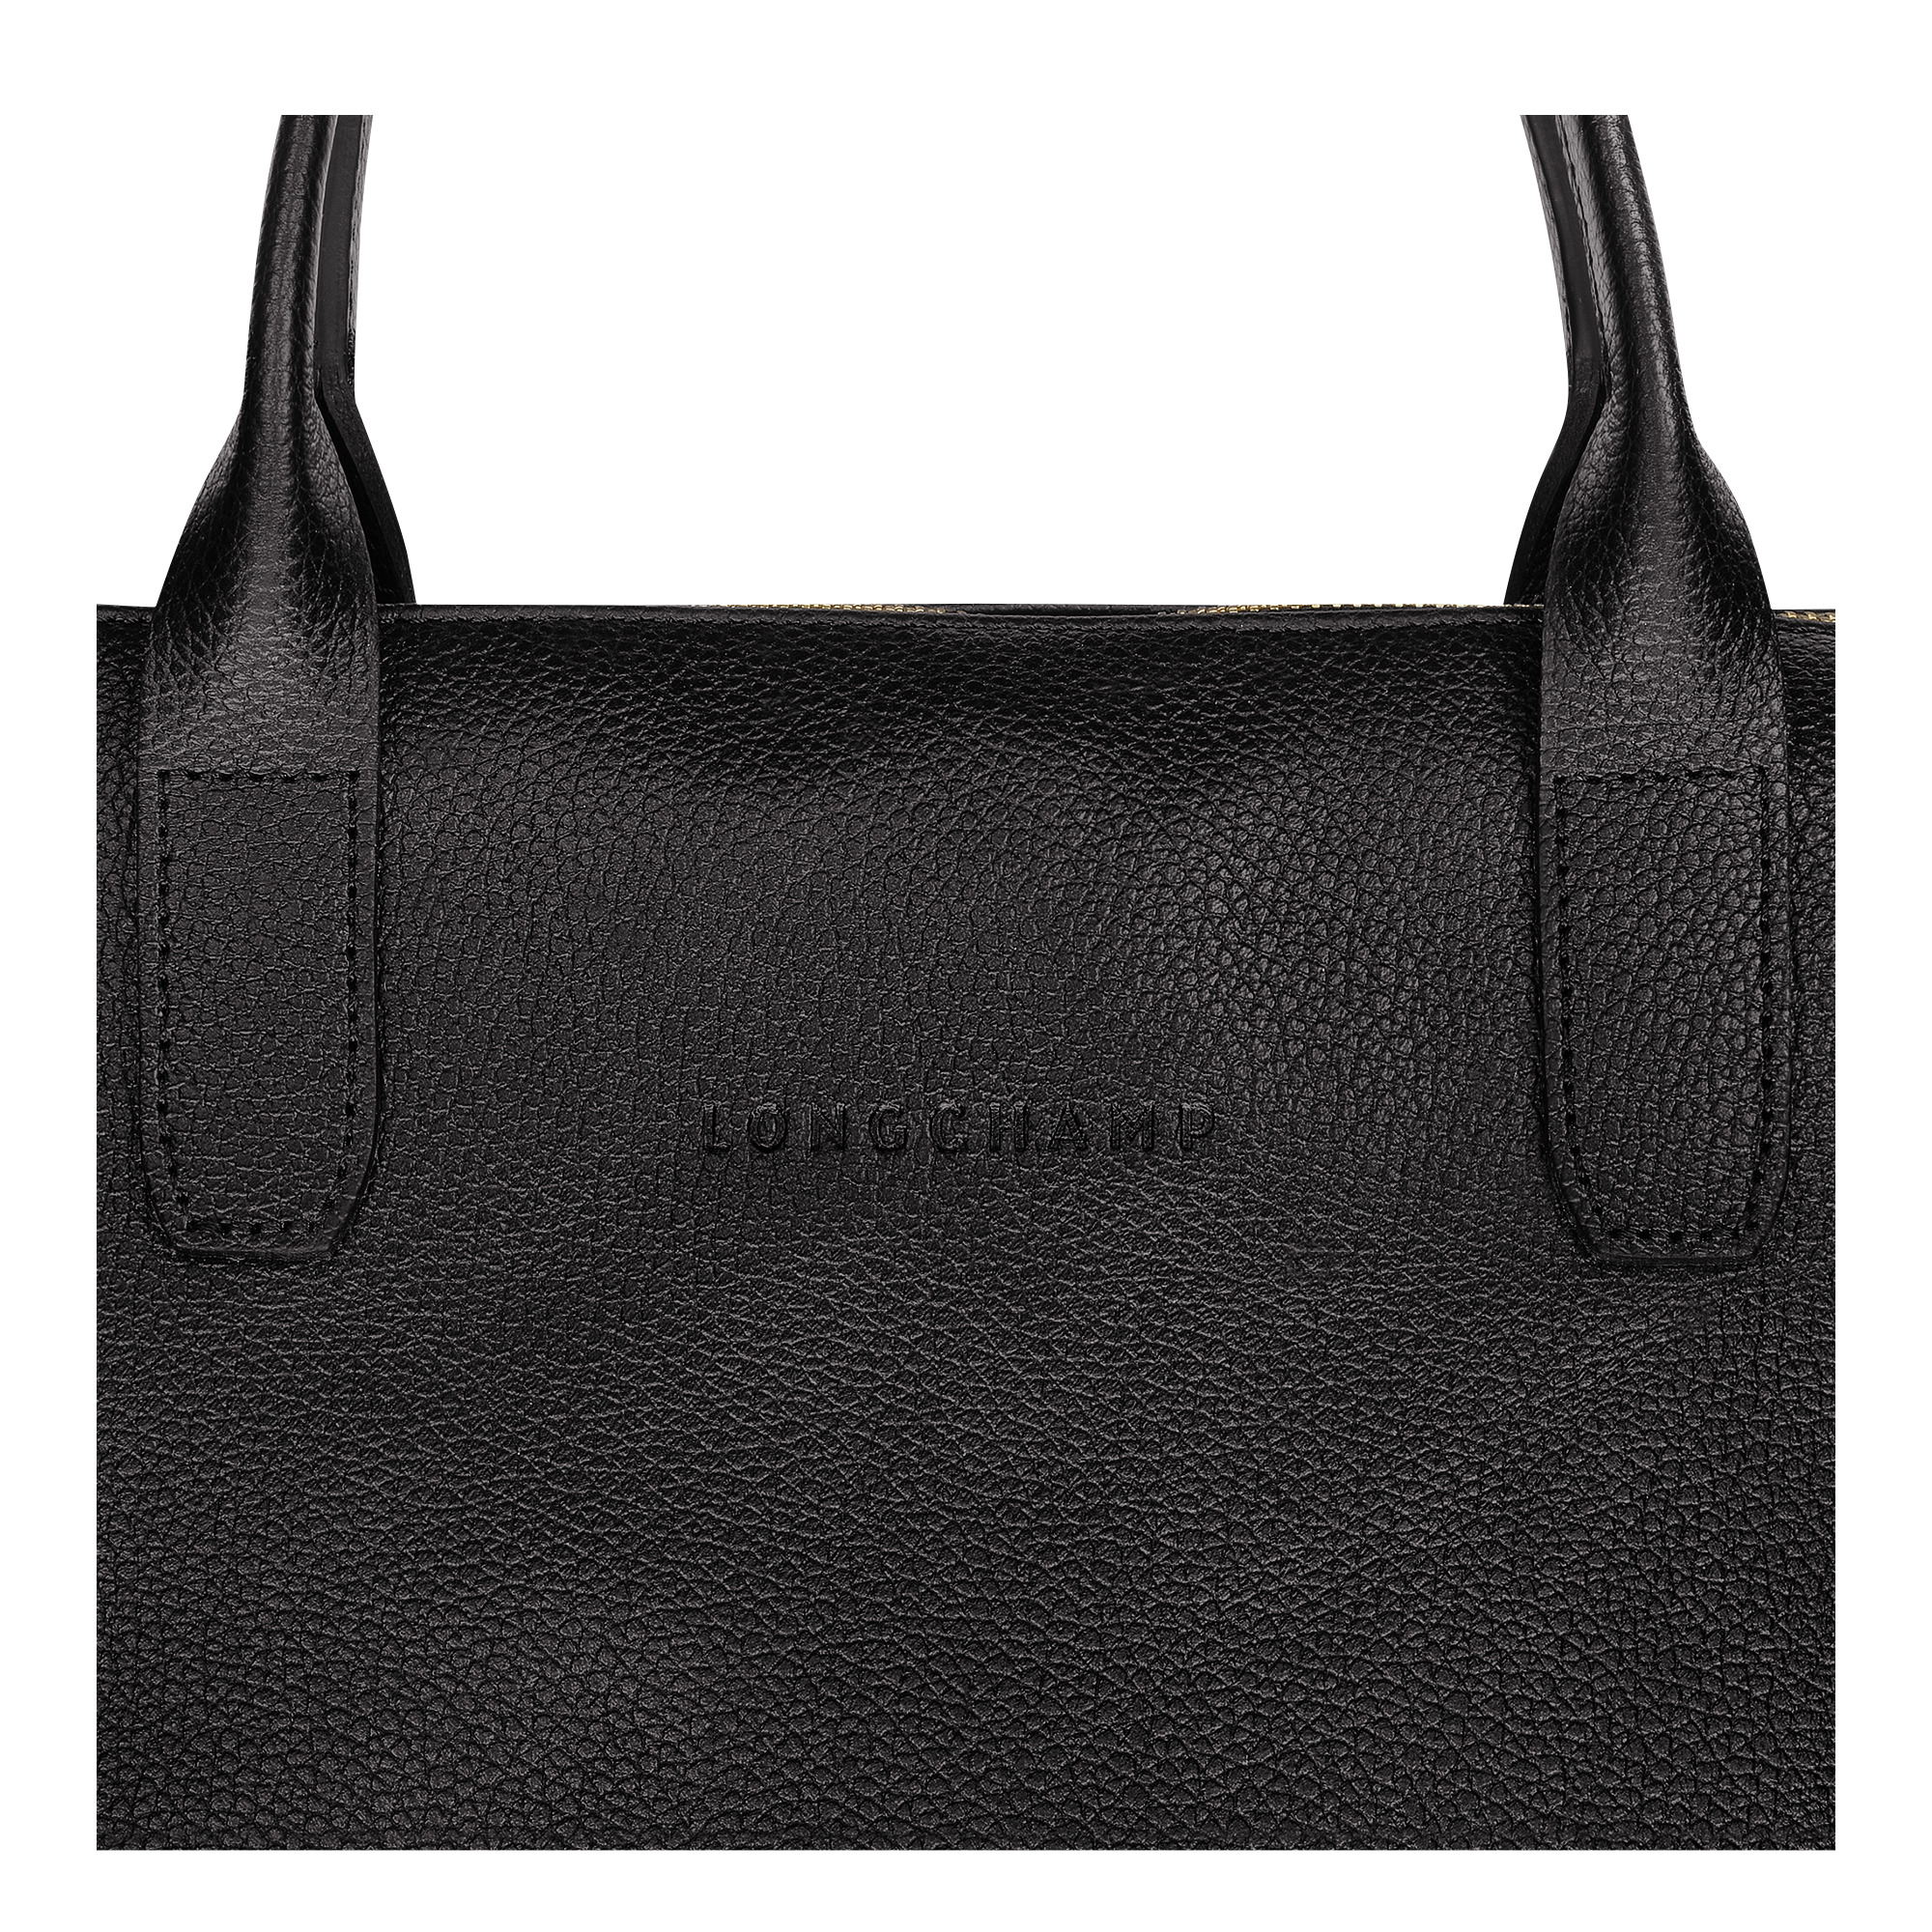 Le Foulonné S Briefcase Black - Leather - 5